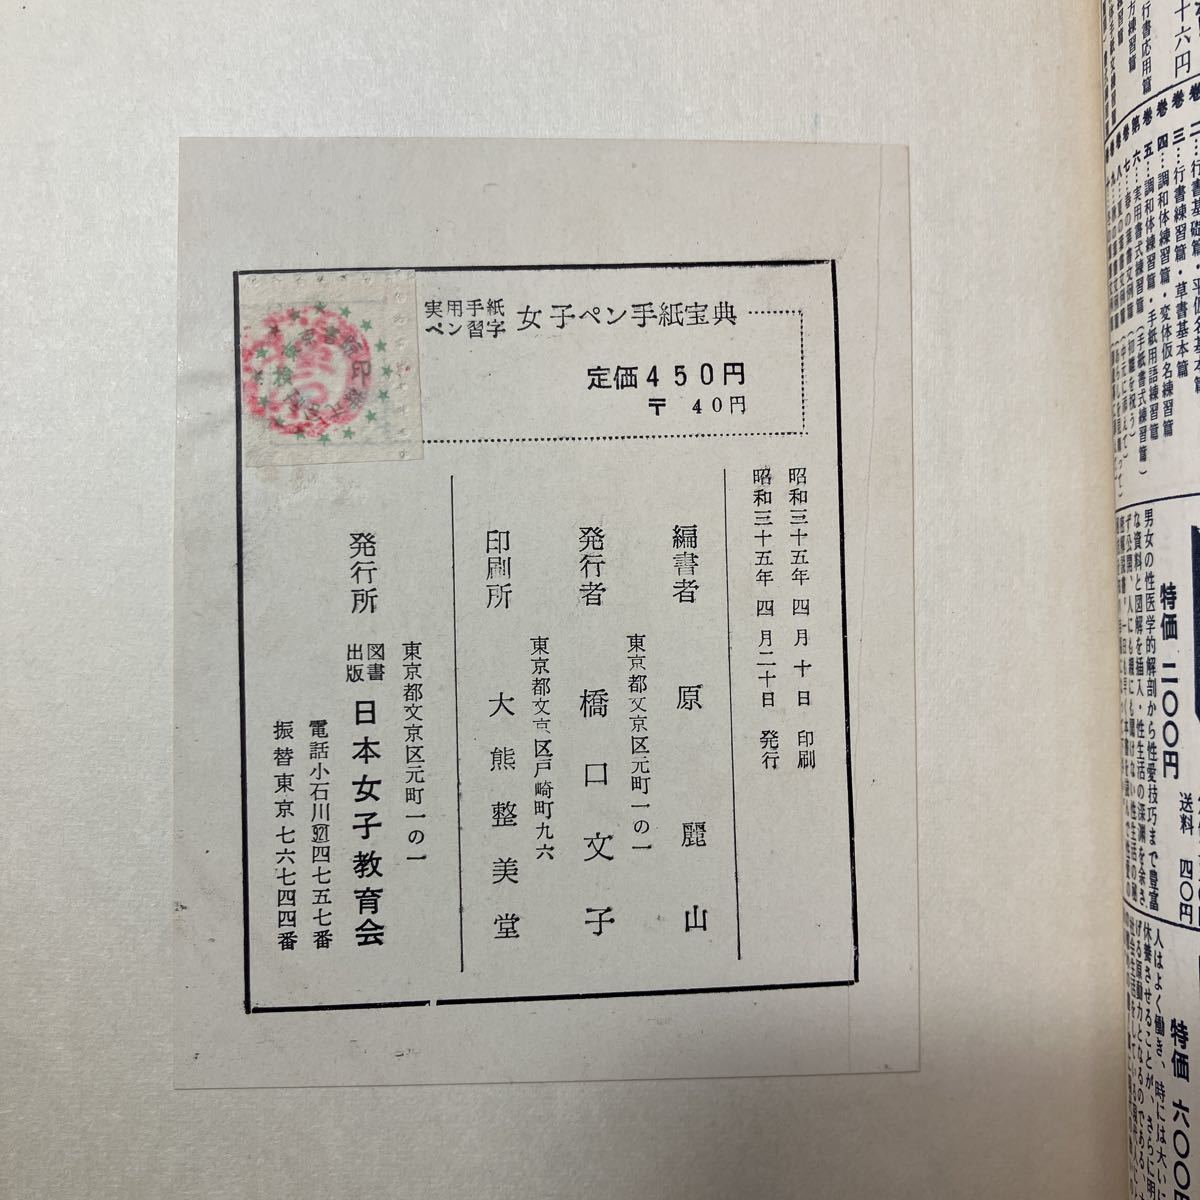 zaa-475! авторучка . знак практическое использование письмо женщина авторучка письмо ... красота гора ( сборник ) Япония женщина образование .(1960/4/20)